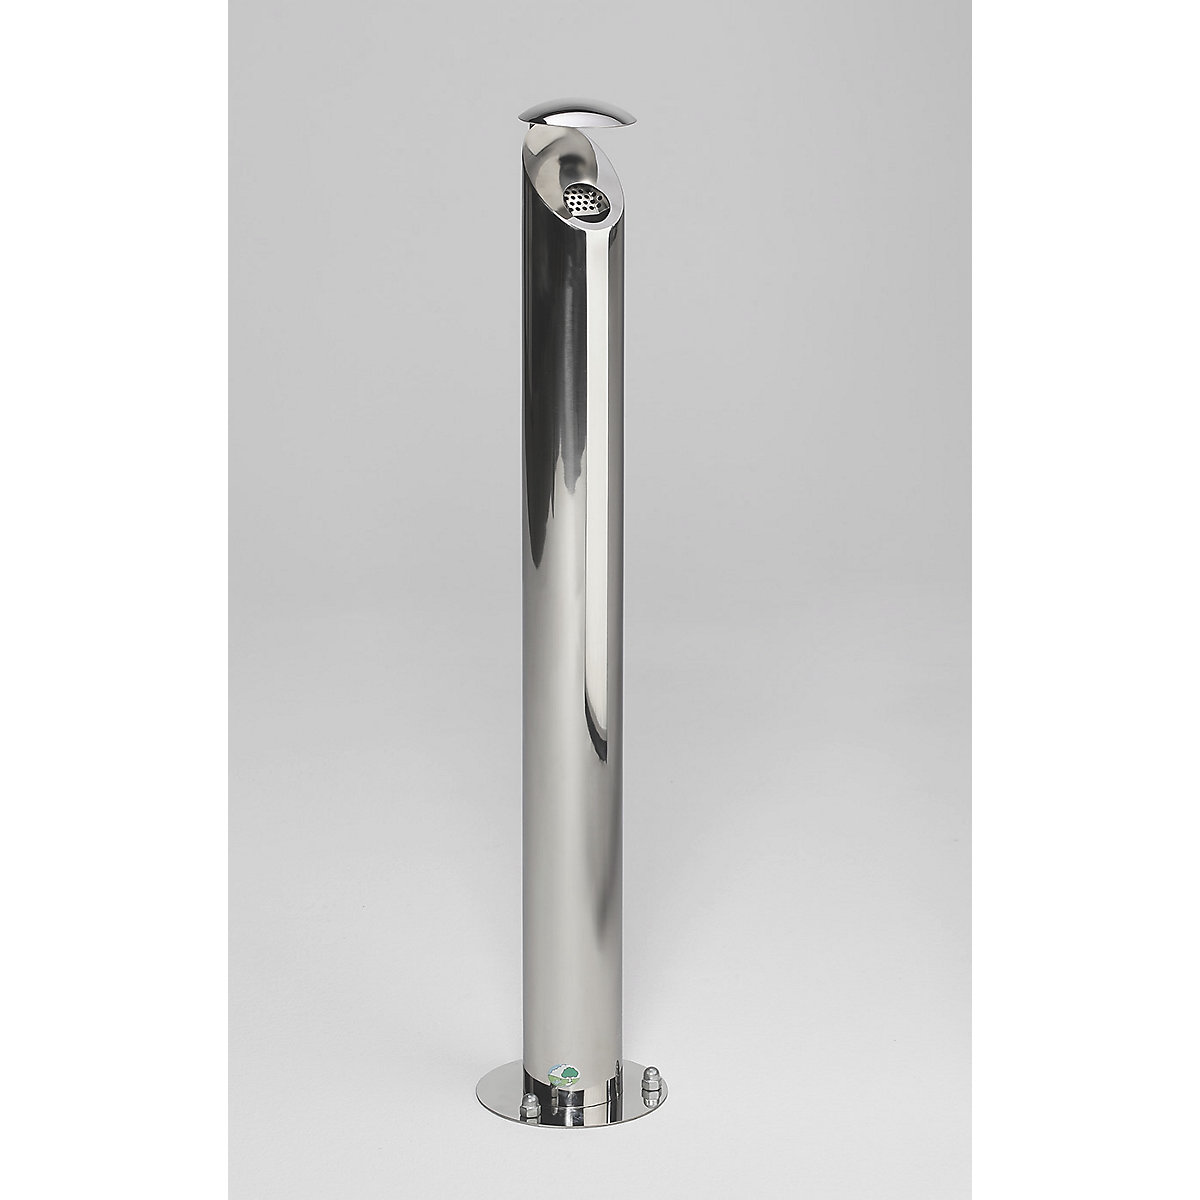 Stainless steel pedestal ashtray, lockable - VAR